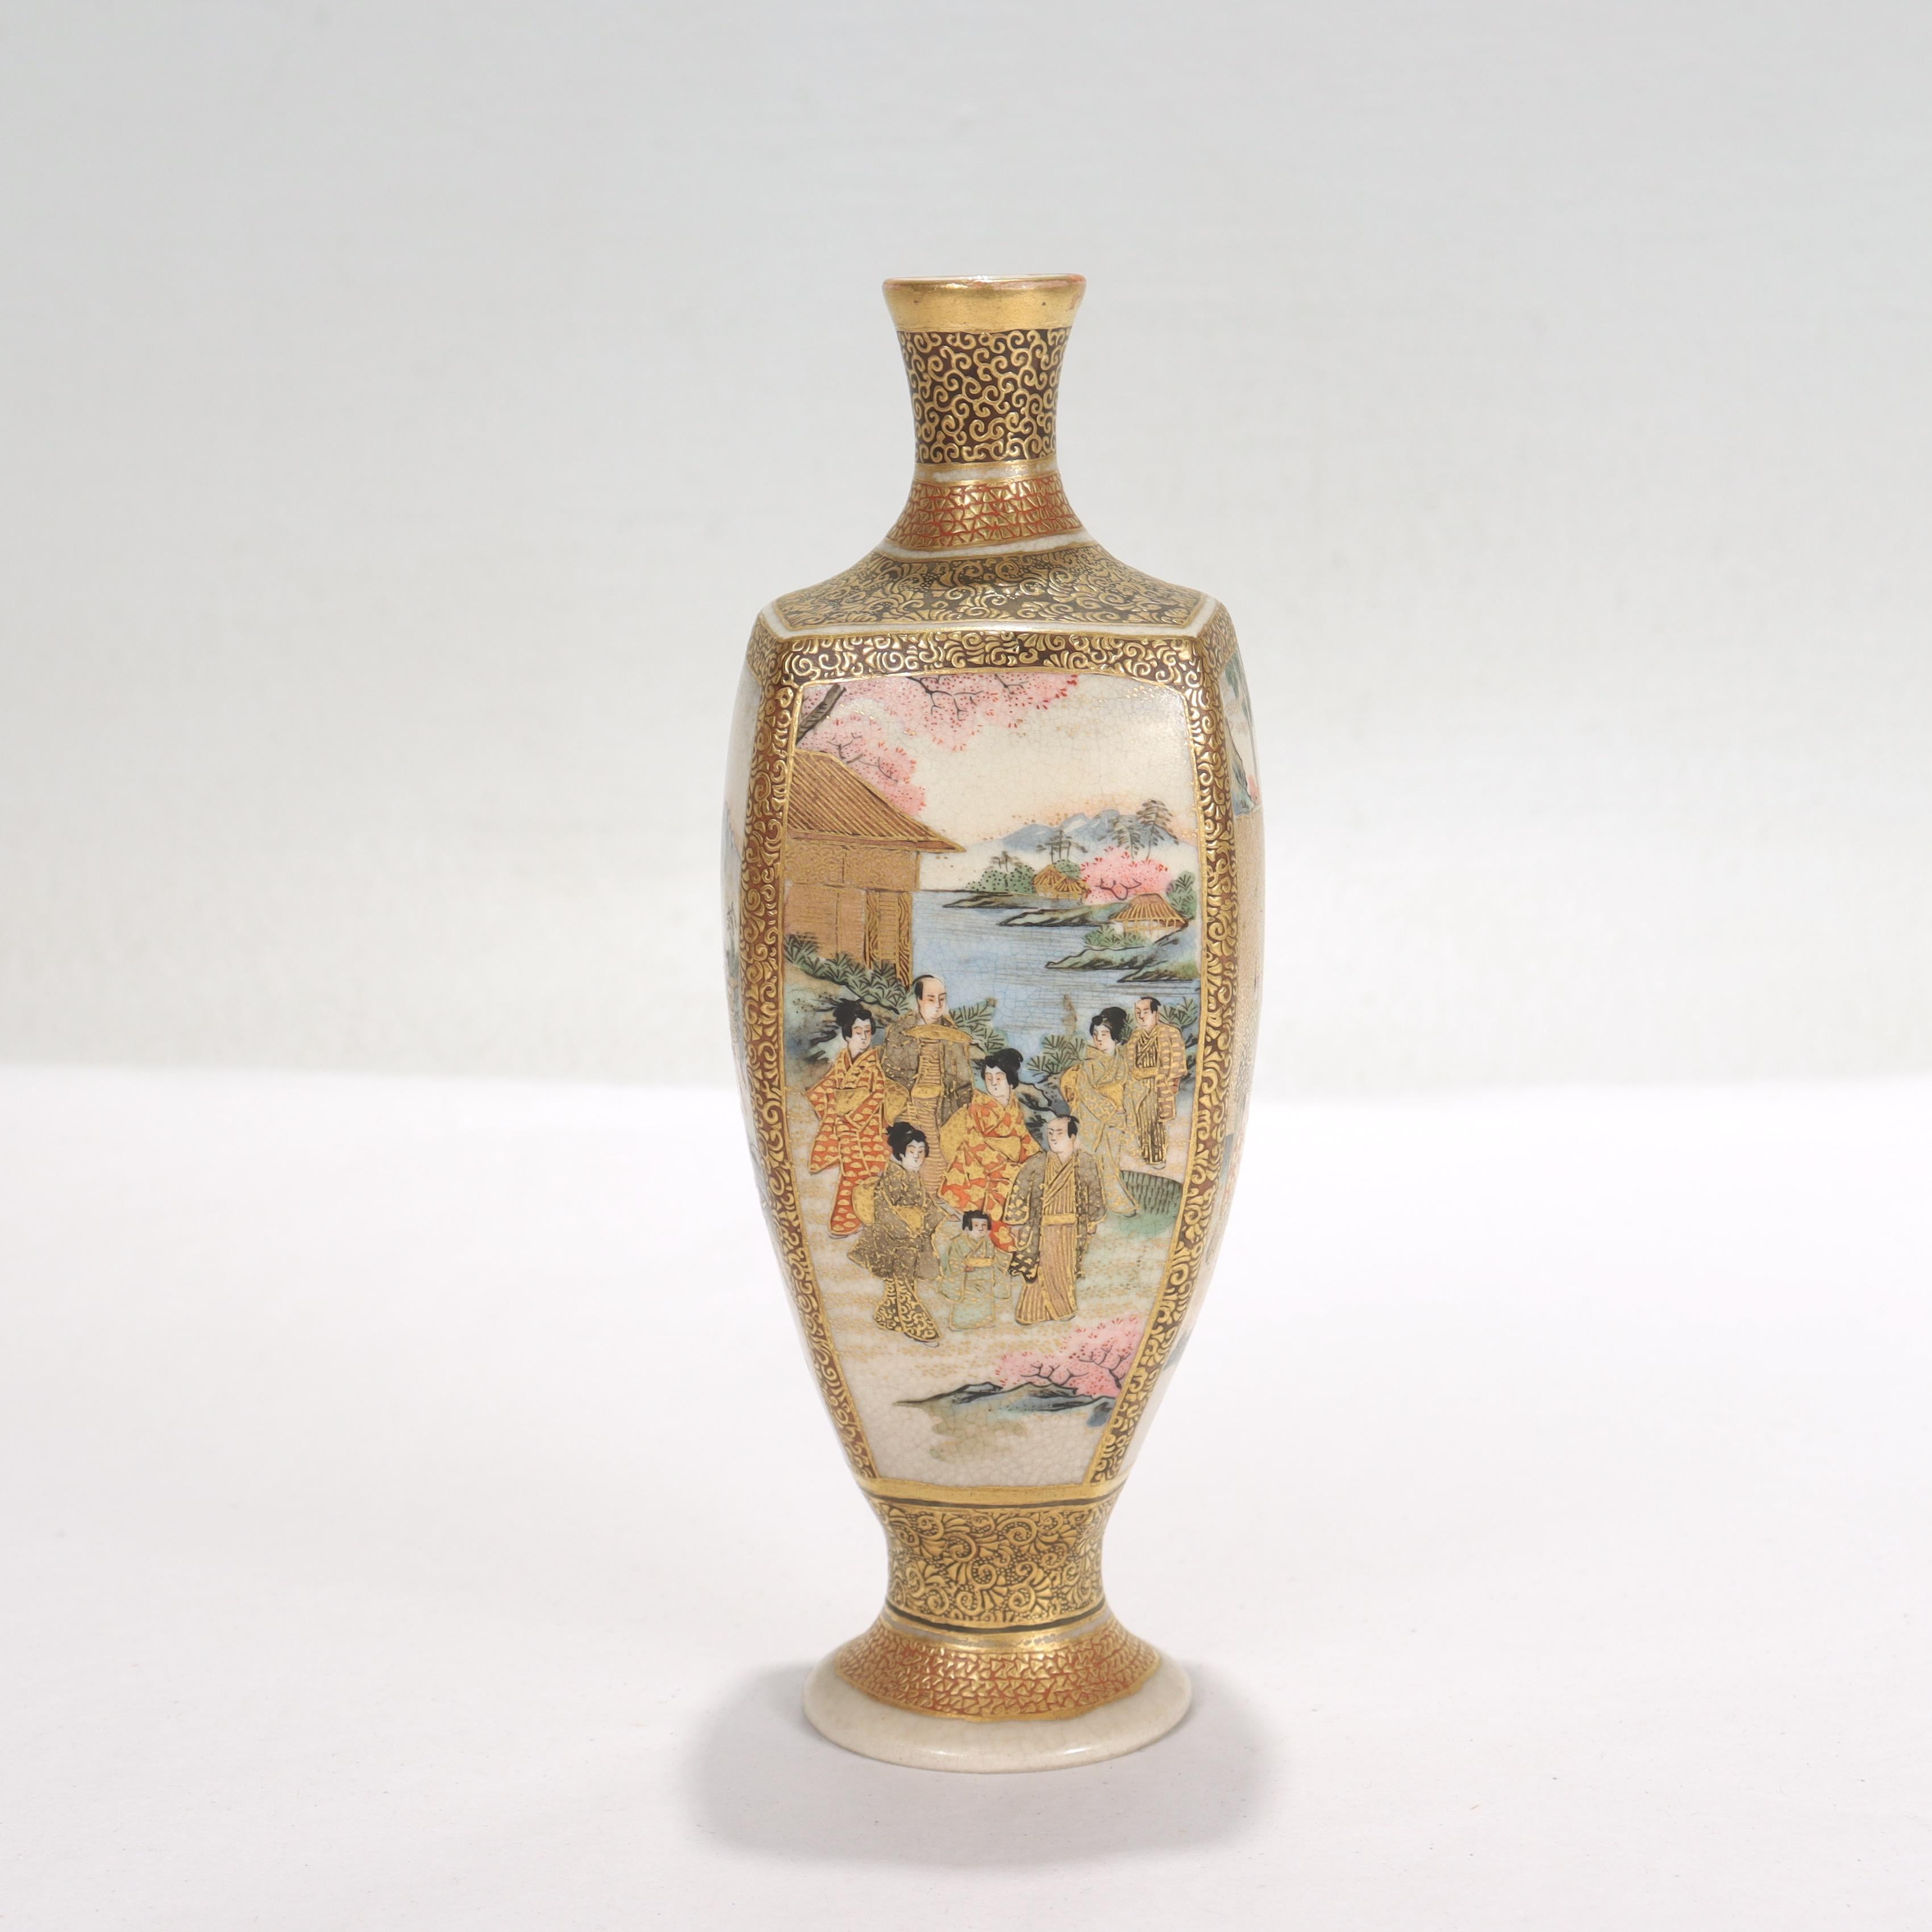 Vase miniature en porcelaine japonaise de Satsuma.

Avec des scènes émaillées sur tous les côtés et de riches rehauts dorés sur l'ensemble. 

La base est marquée d'une croix de Satsuma dans un cercle et de caractères japonais qui se traduisent